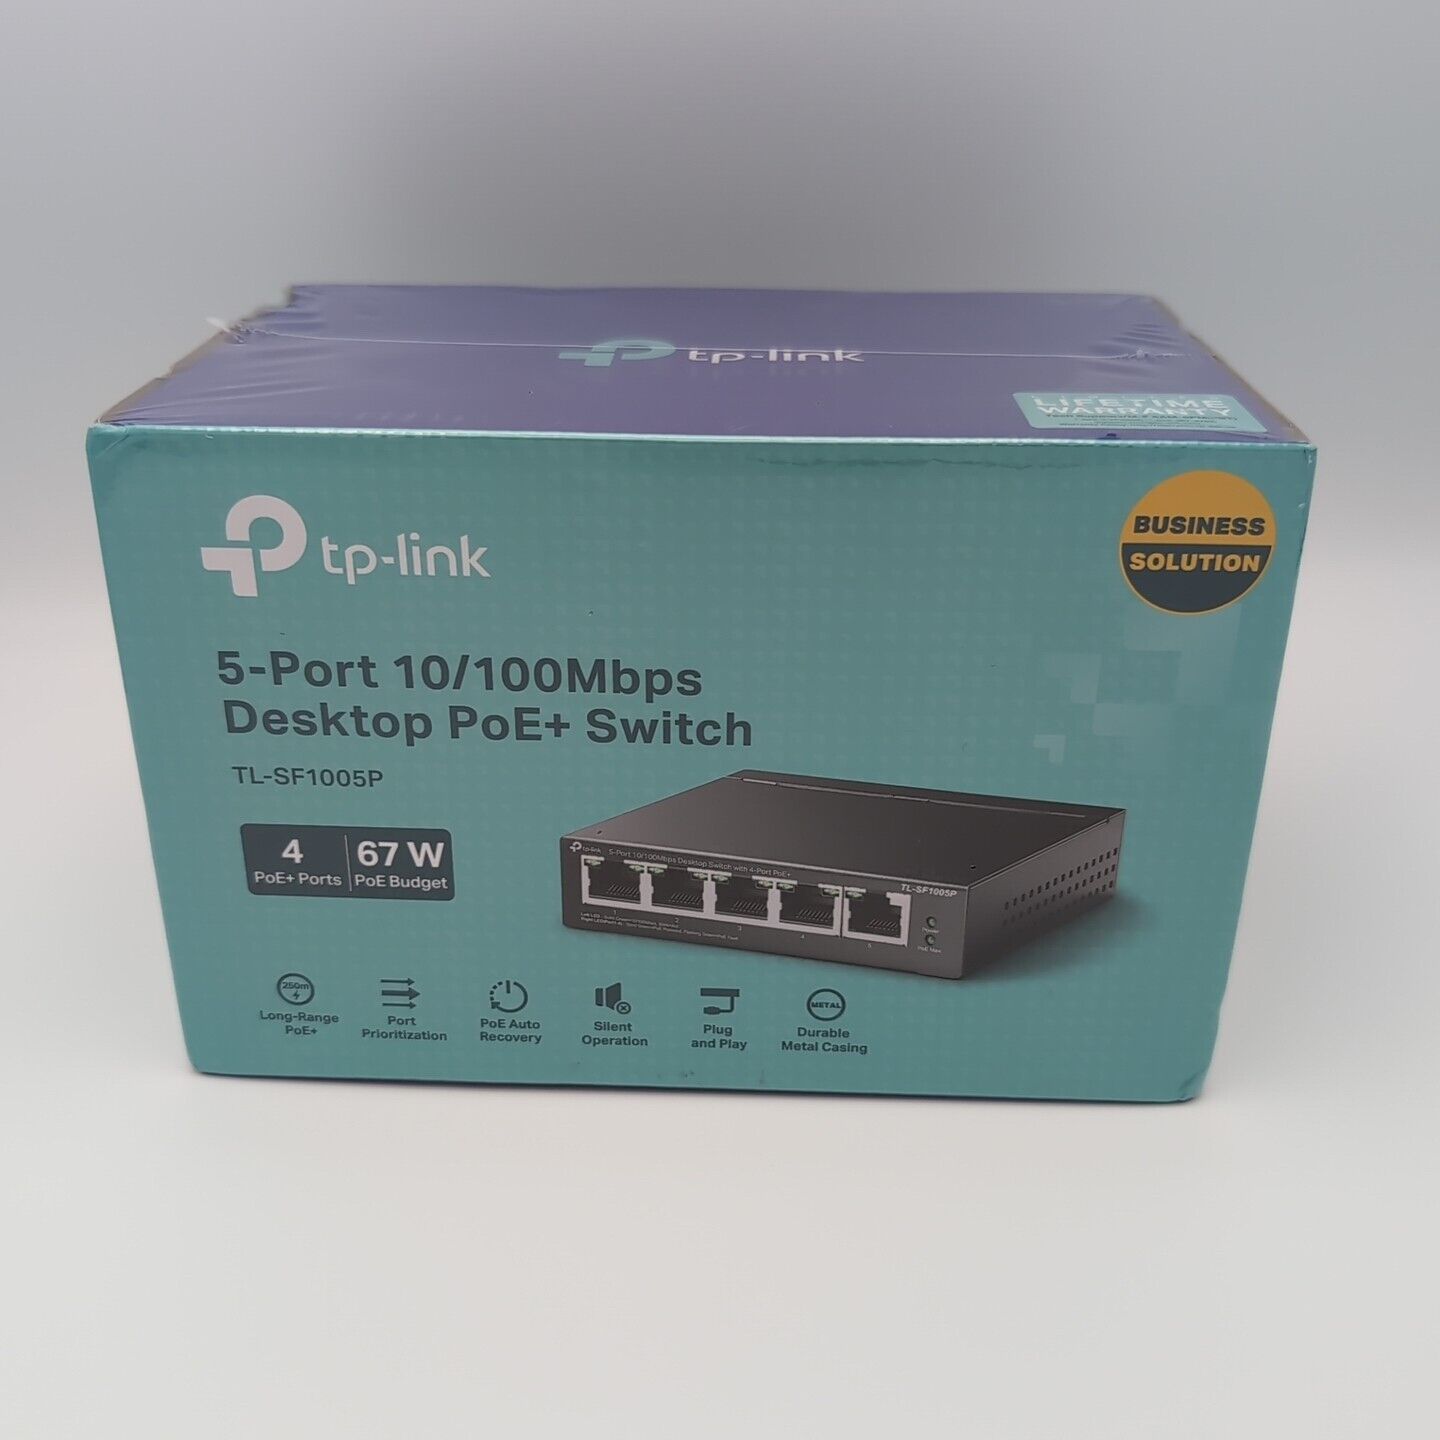 NEW TP-Link PoE Unmanaged Desktop Switch 5-Port 10/100 Mb/s Model TL-SF1005P